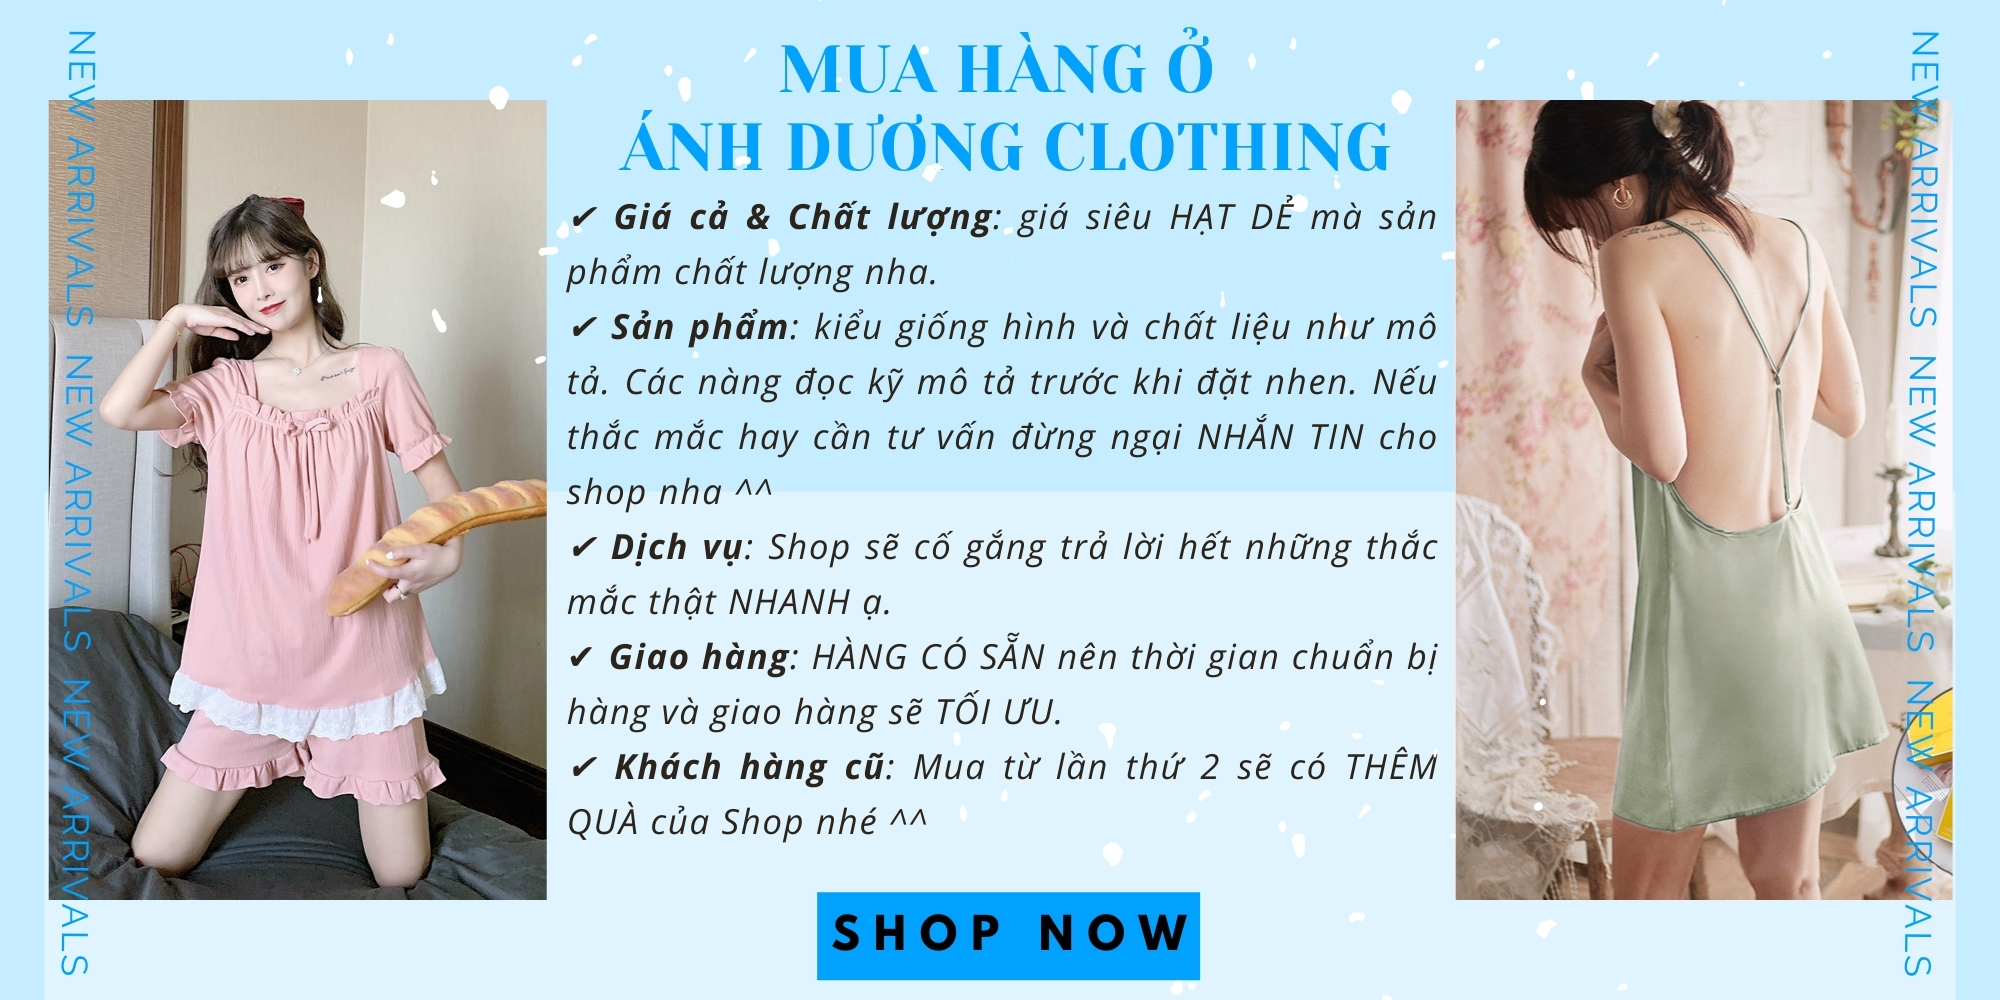 Ánh Dương Clothing